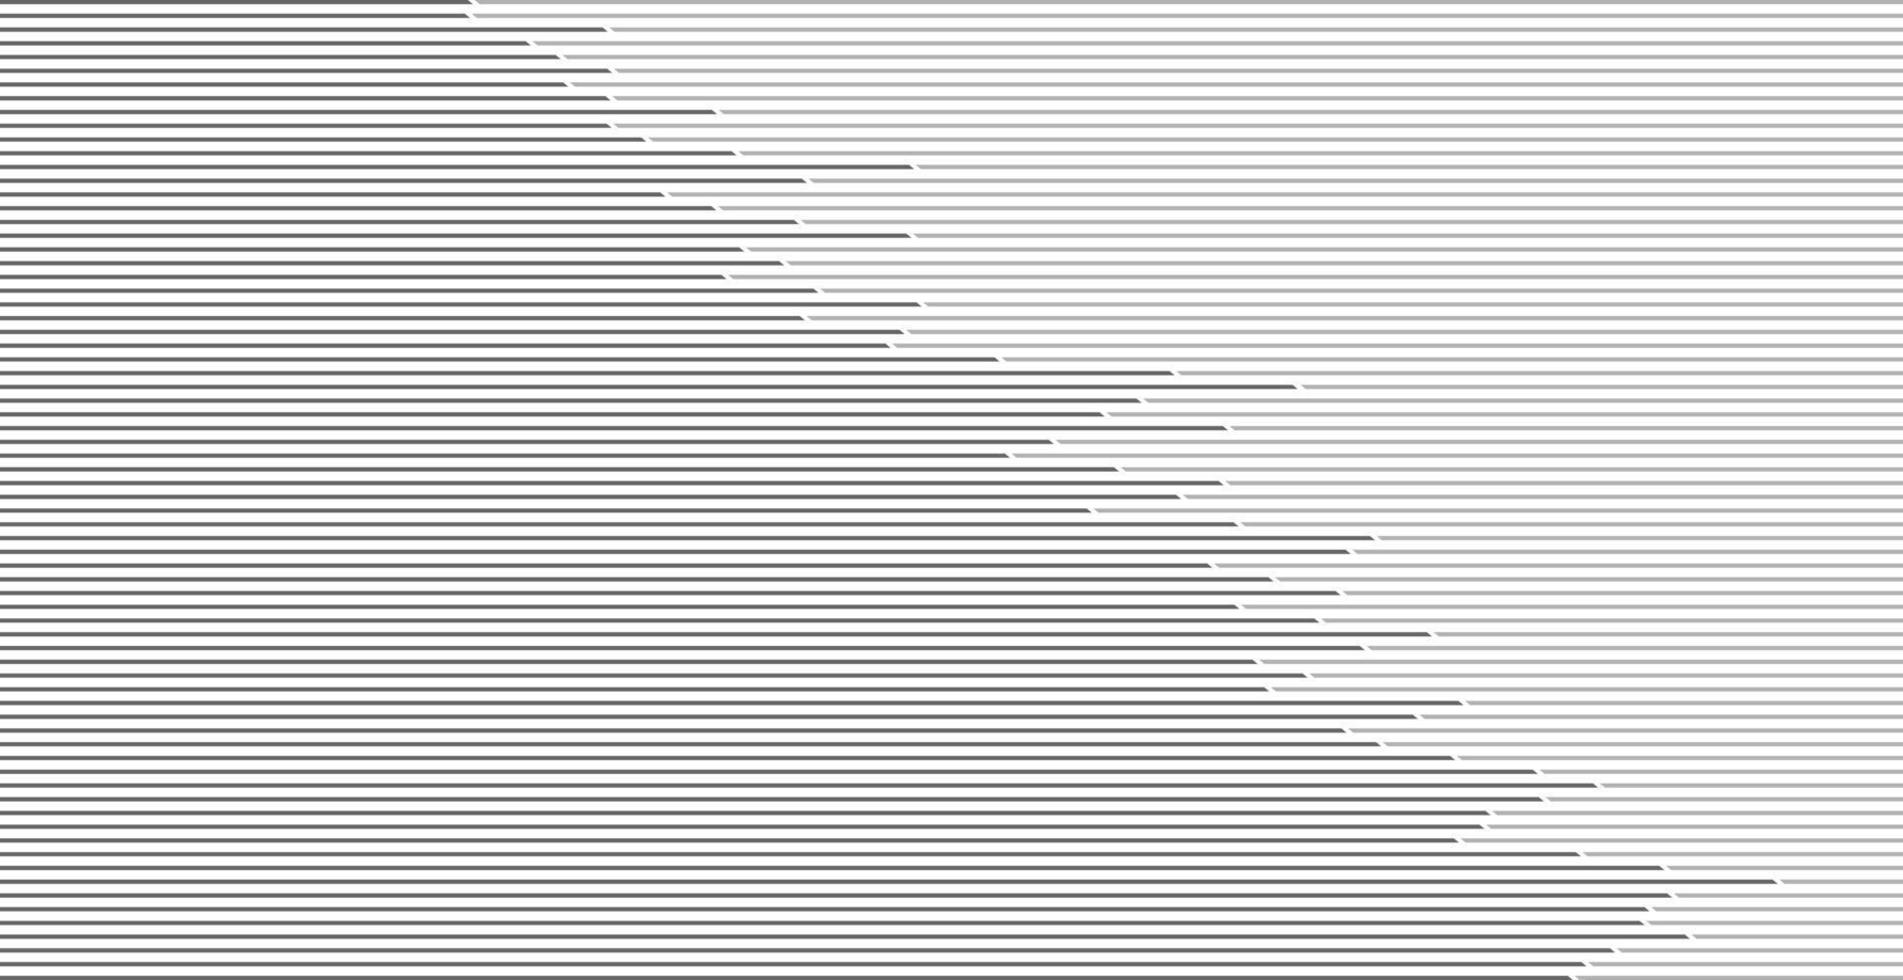 abstrakter Linienhintergrund vektor